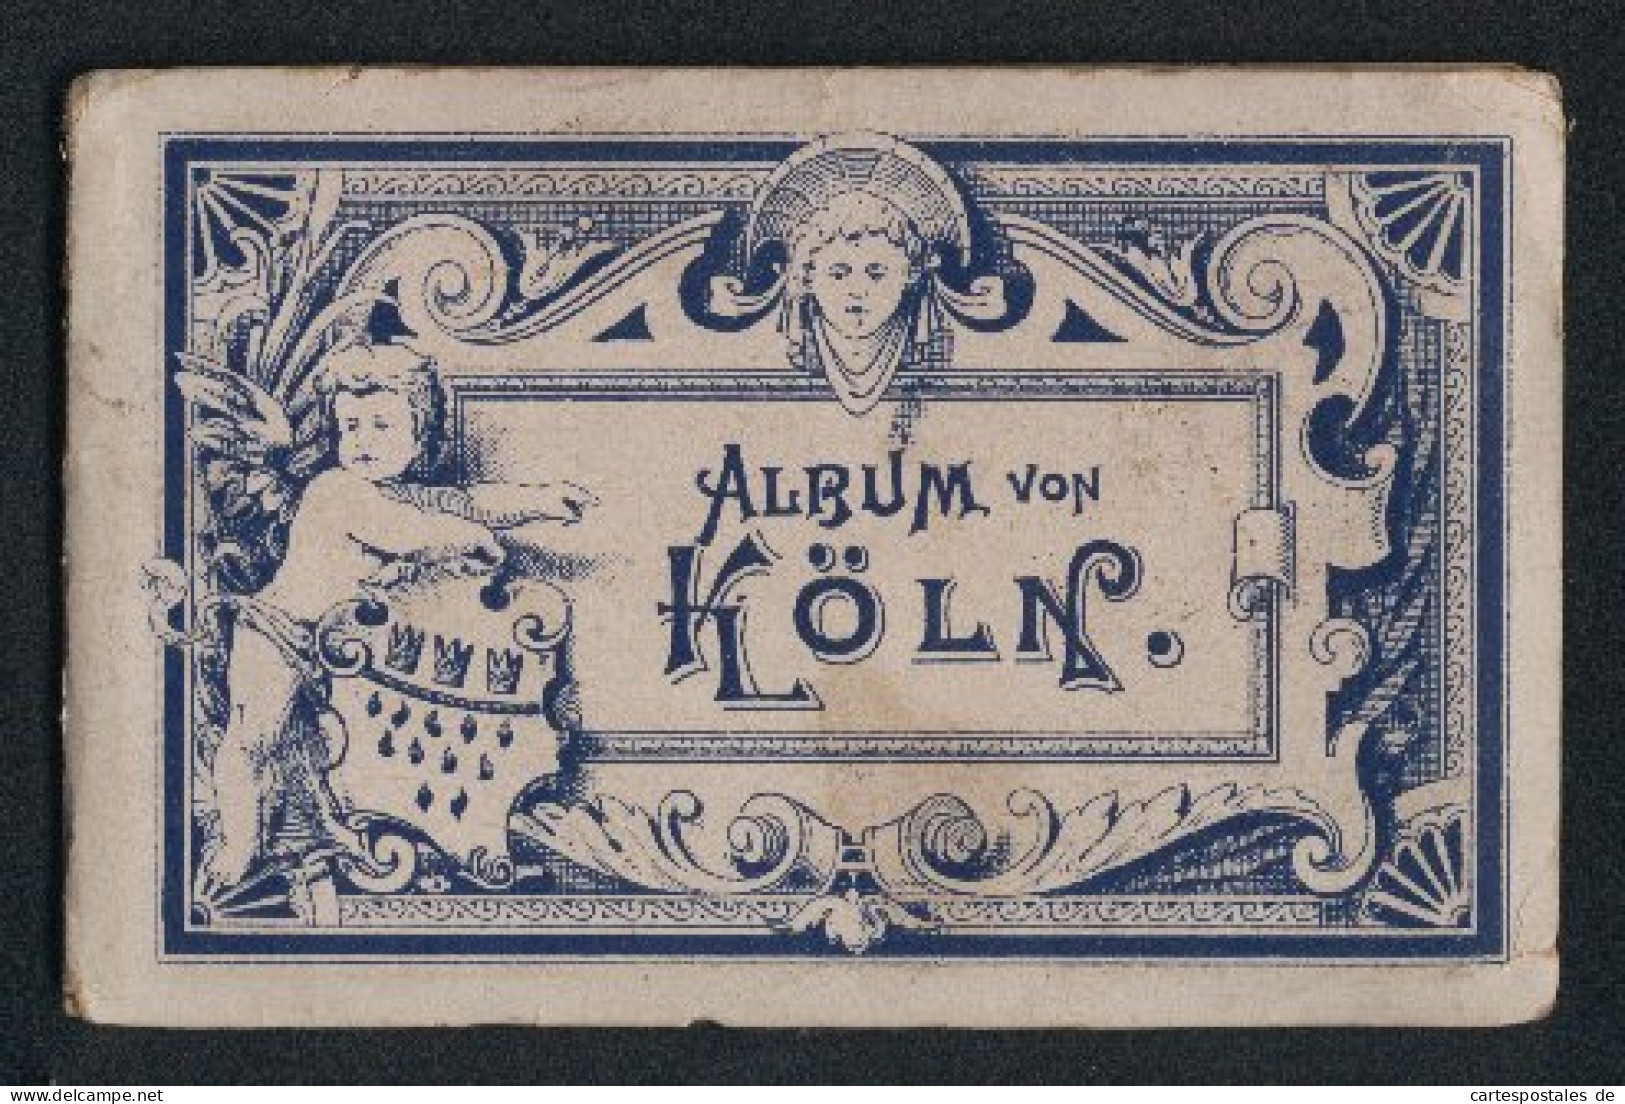 Leporello-Album Köln Mit 12 Lithographie-Ansichten, Bahnhof, Flora, Hohenzollerring, Museum Walraff-Richartz, Dom, Po  - Lithographies